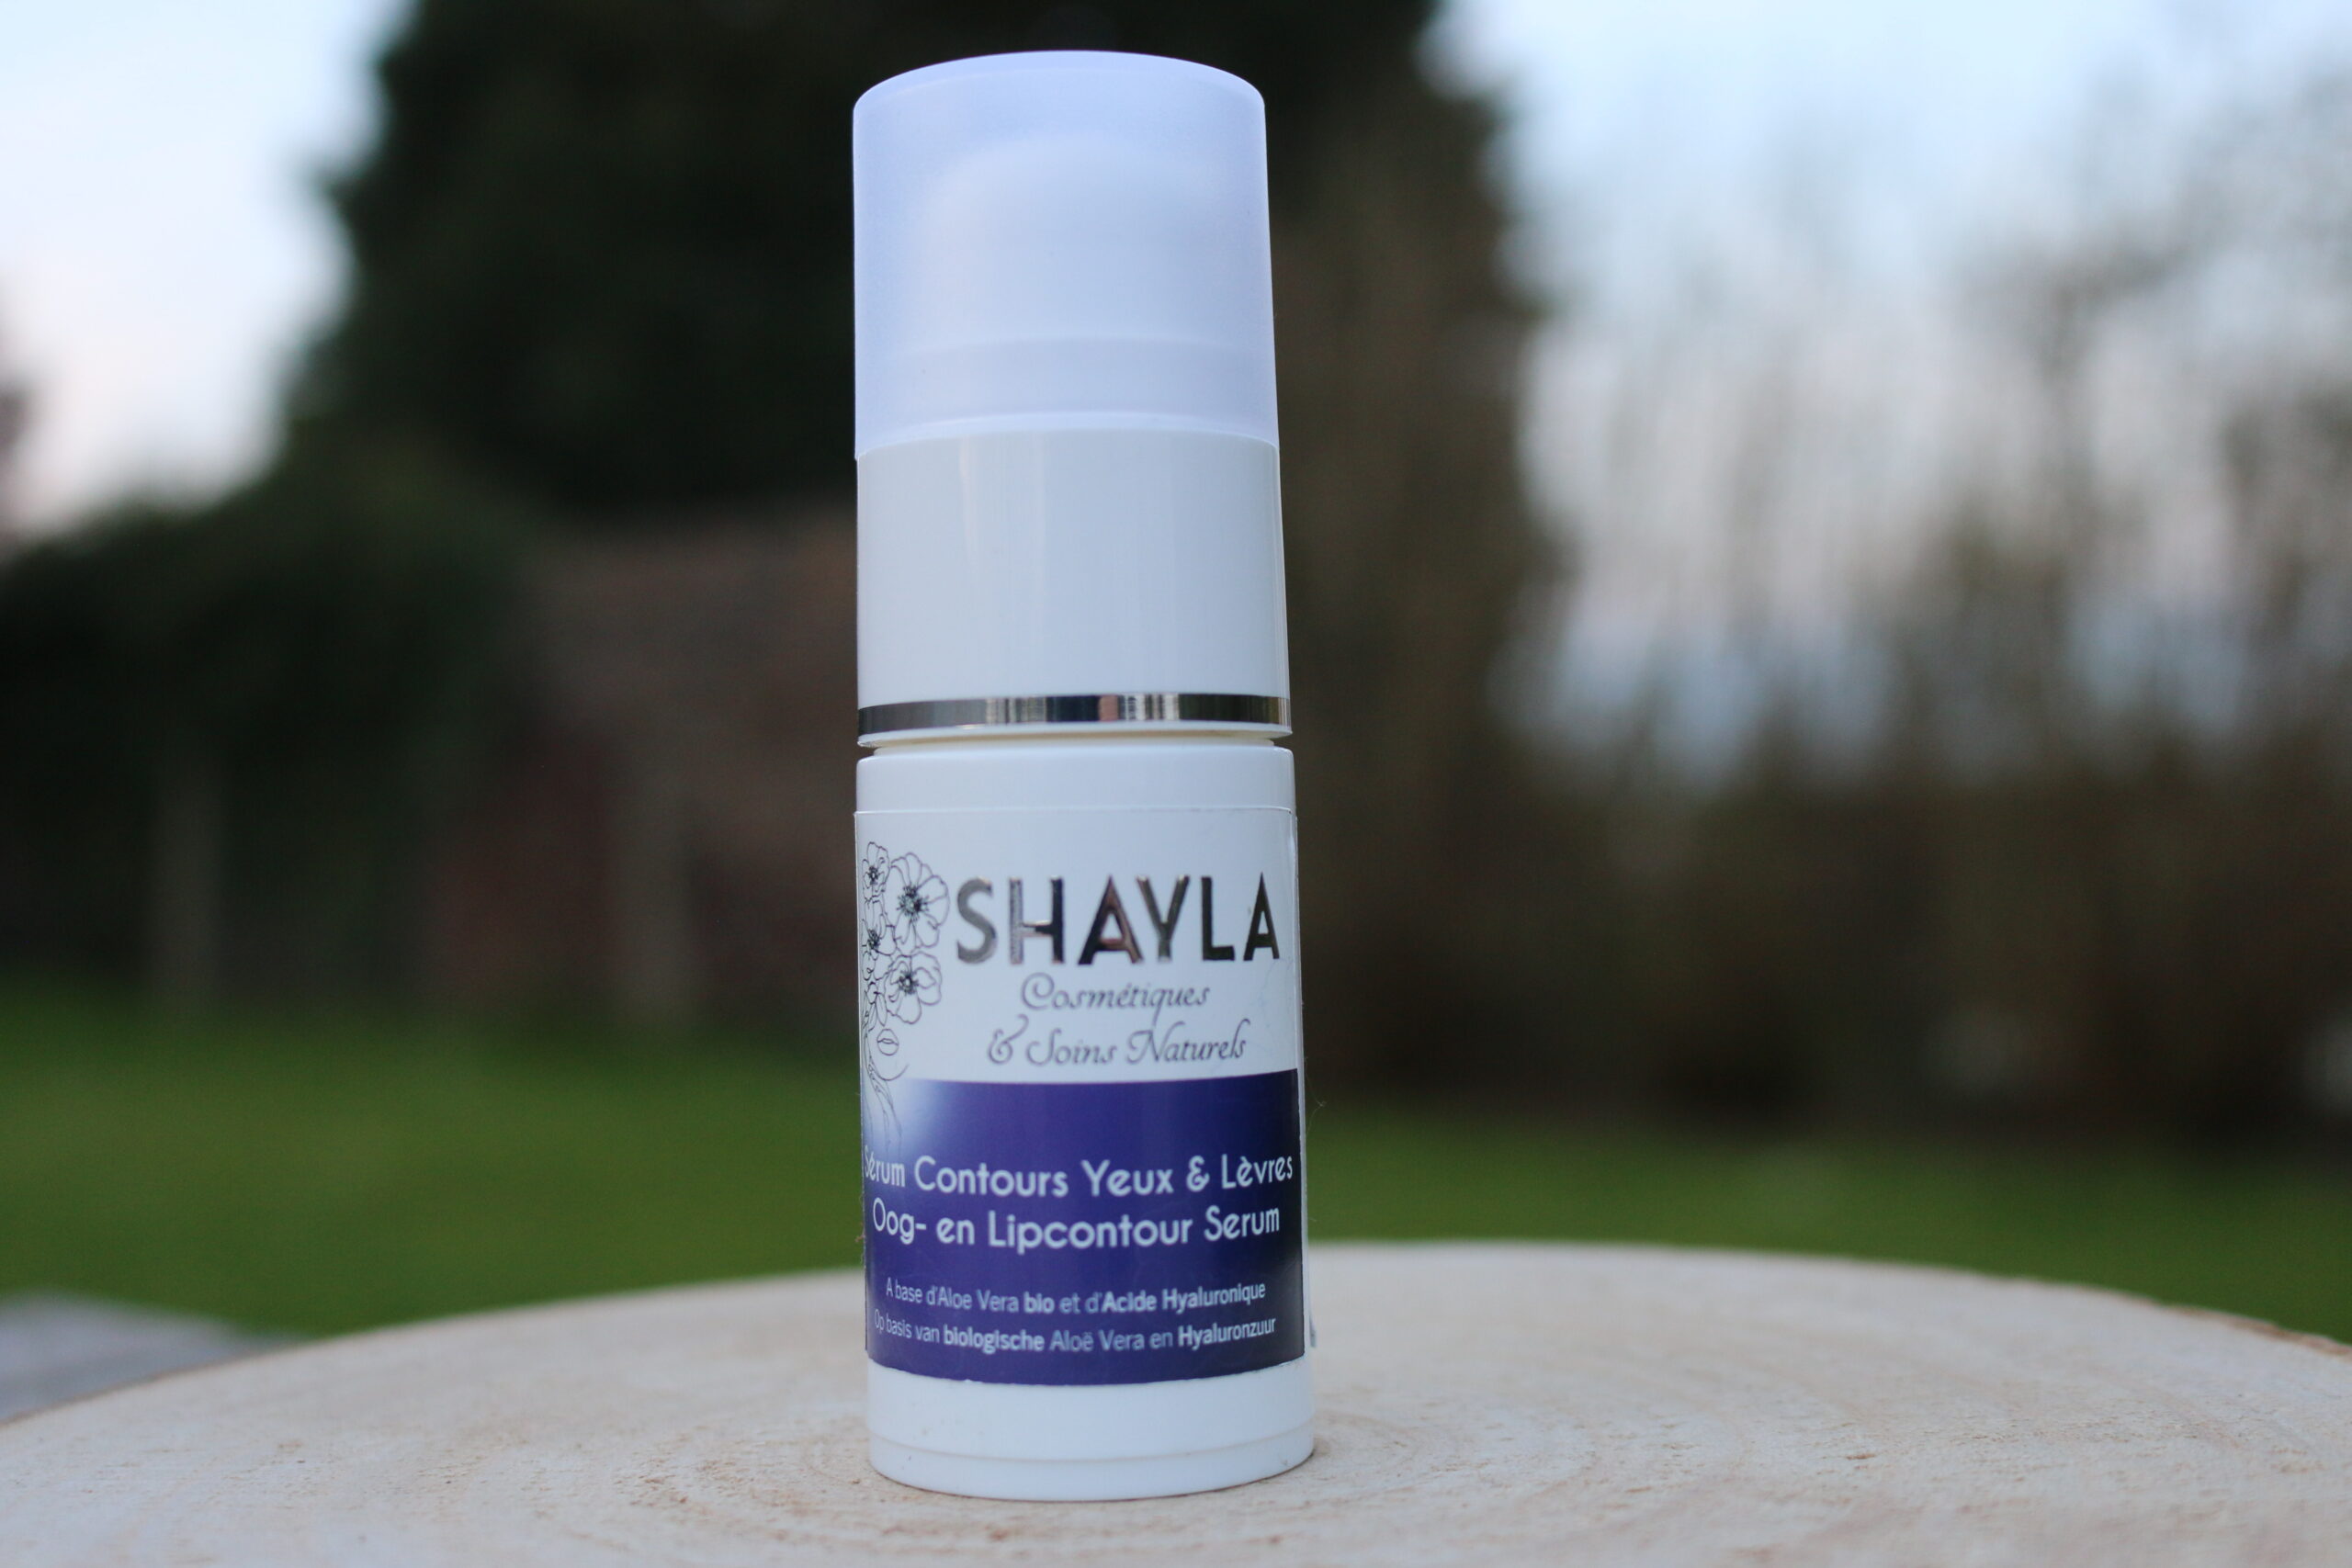 shayla-cosmetiques-et-soins-naturels-shayla-Belge-serum-pour-contours-yeux-et-levre-acide-haluronique-scaled.jpg